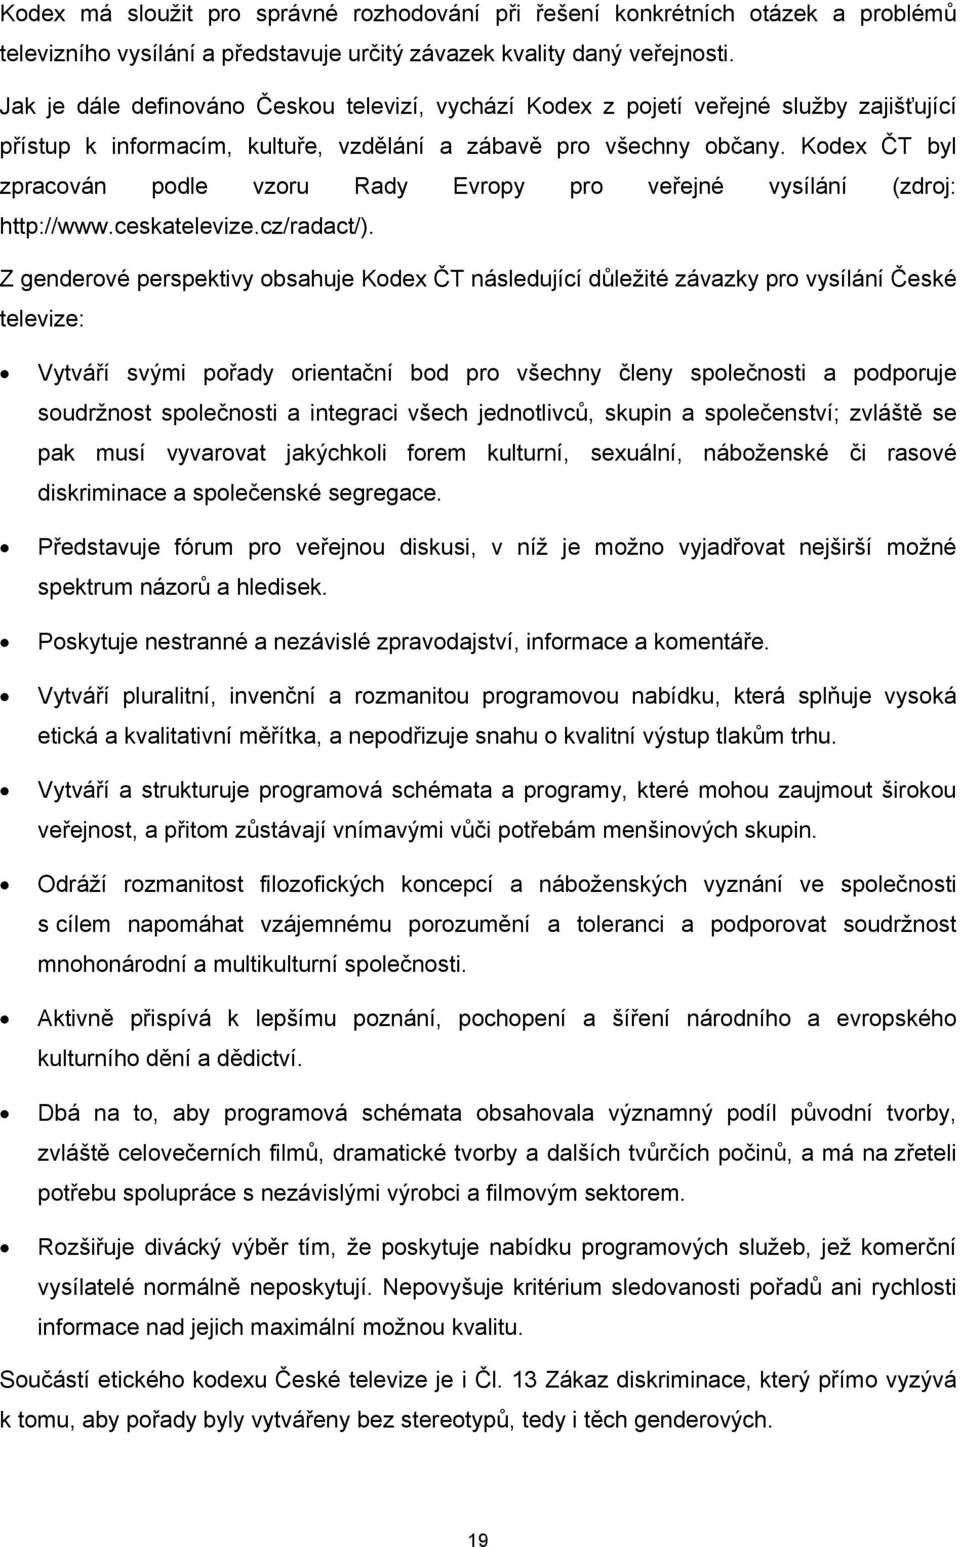 Kodex ČT byl zpracován podle vzoru Rady Evropy pro veřejné vysílání (zdroj: http://www.ceskatelevize.cz/radact/).